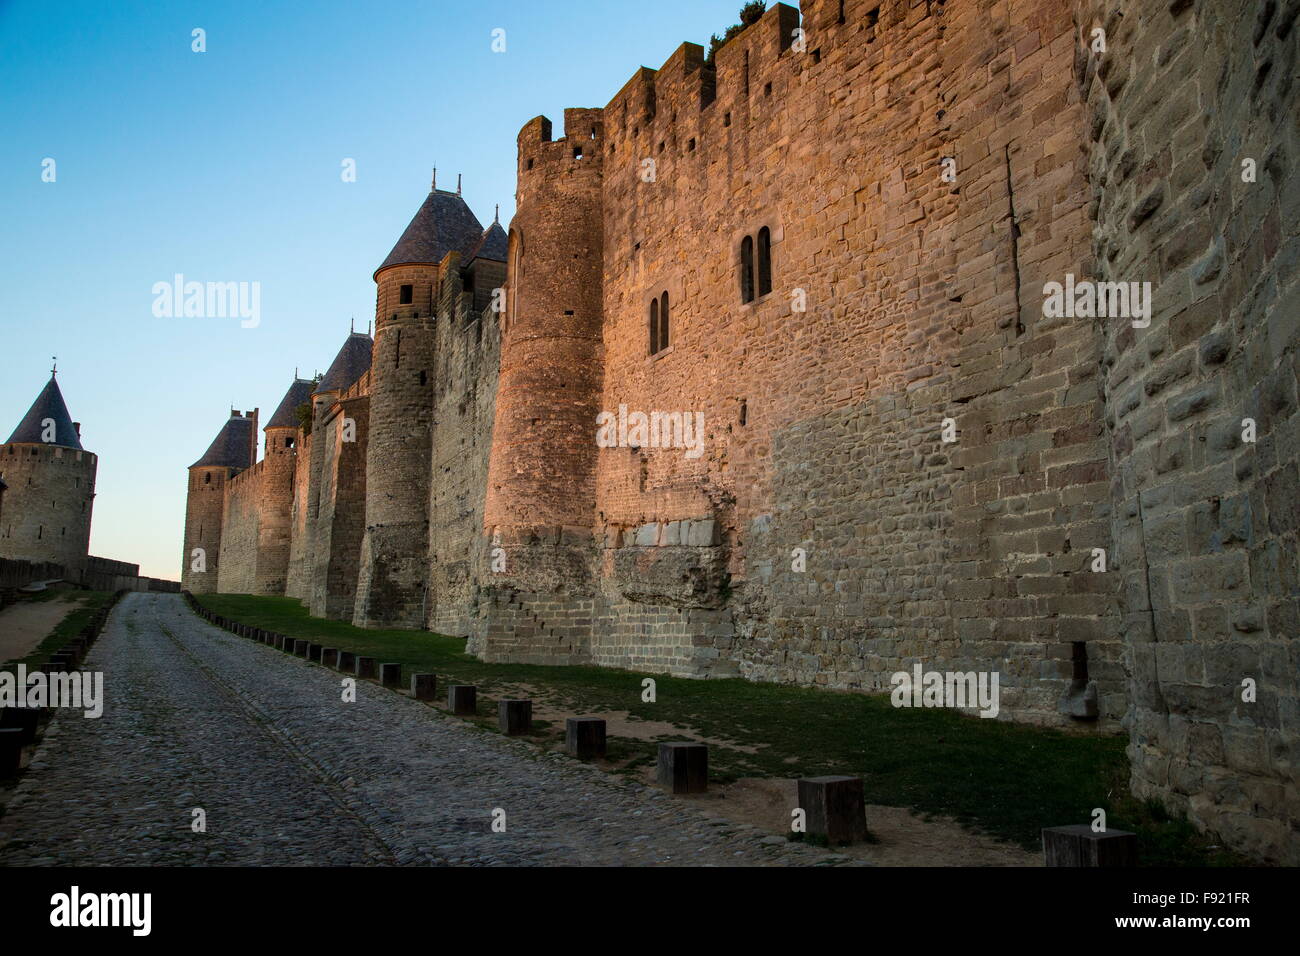 L'enceinte fortifiée de Carcassonne à l'aube, au sud-ouest de la France Banque D'Images